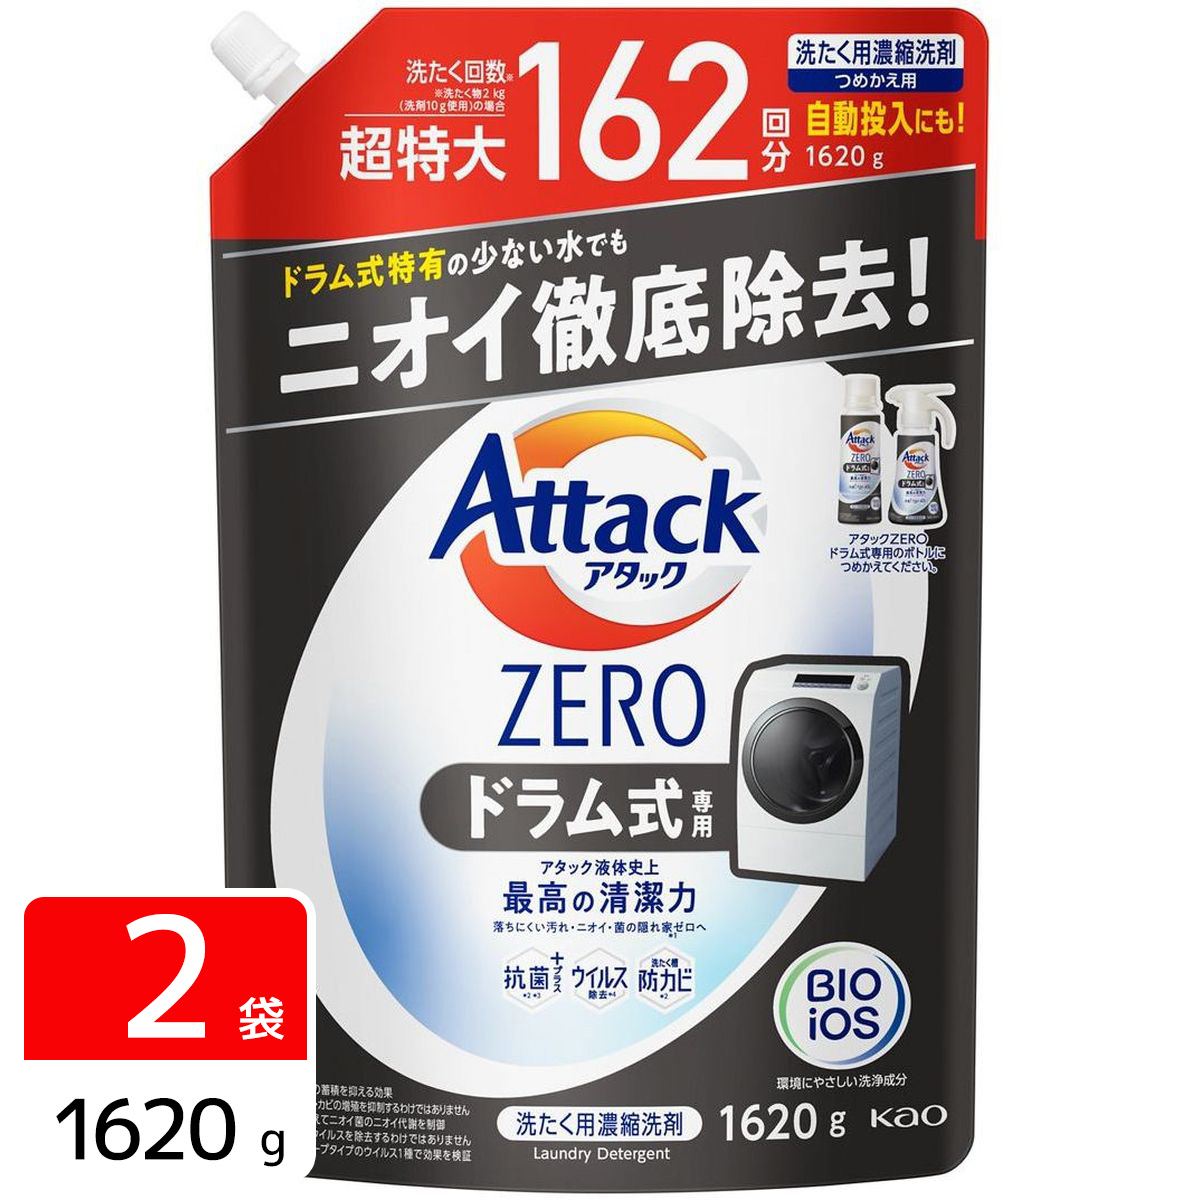 アタックゼロ Attack ZERO ドラム式専用 洗濯洗剤 詰め替え 超特大 1620g 2袋セット